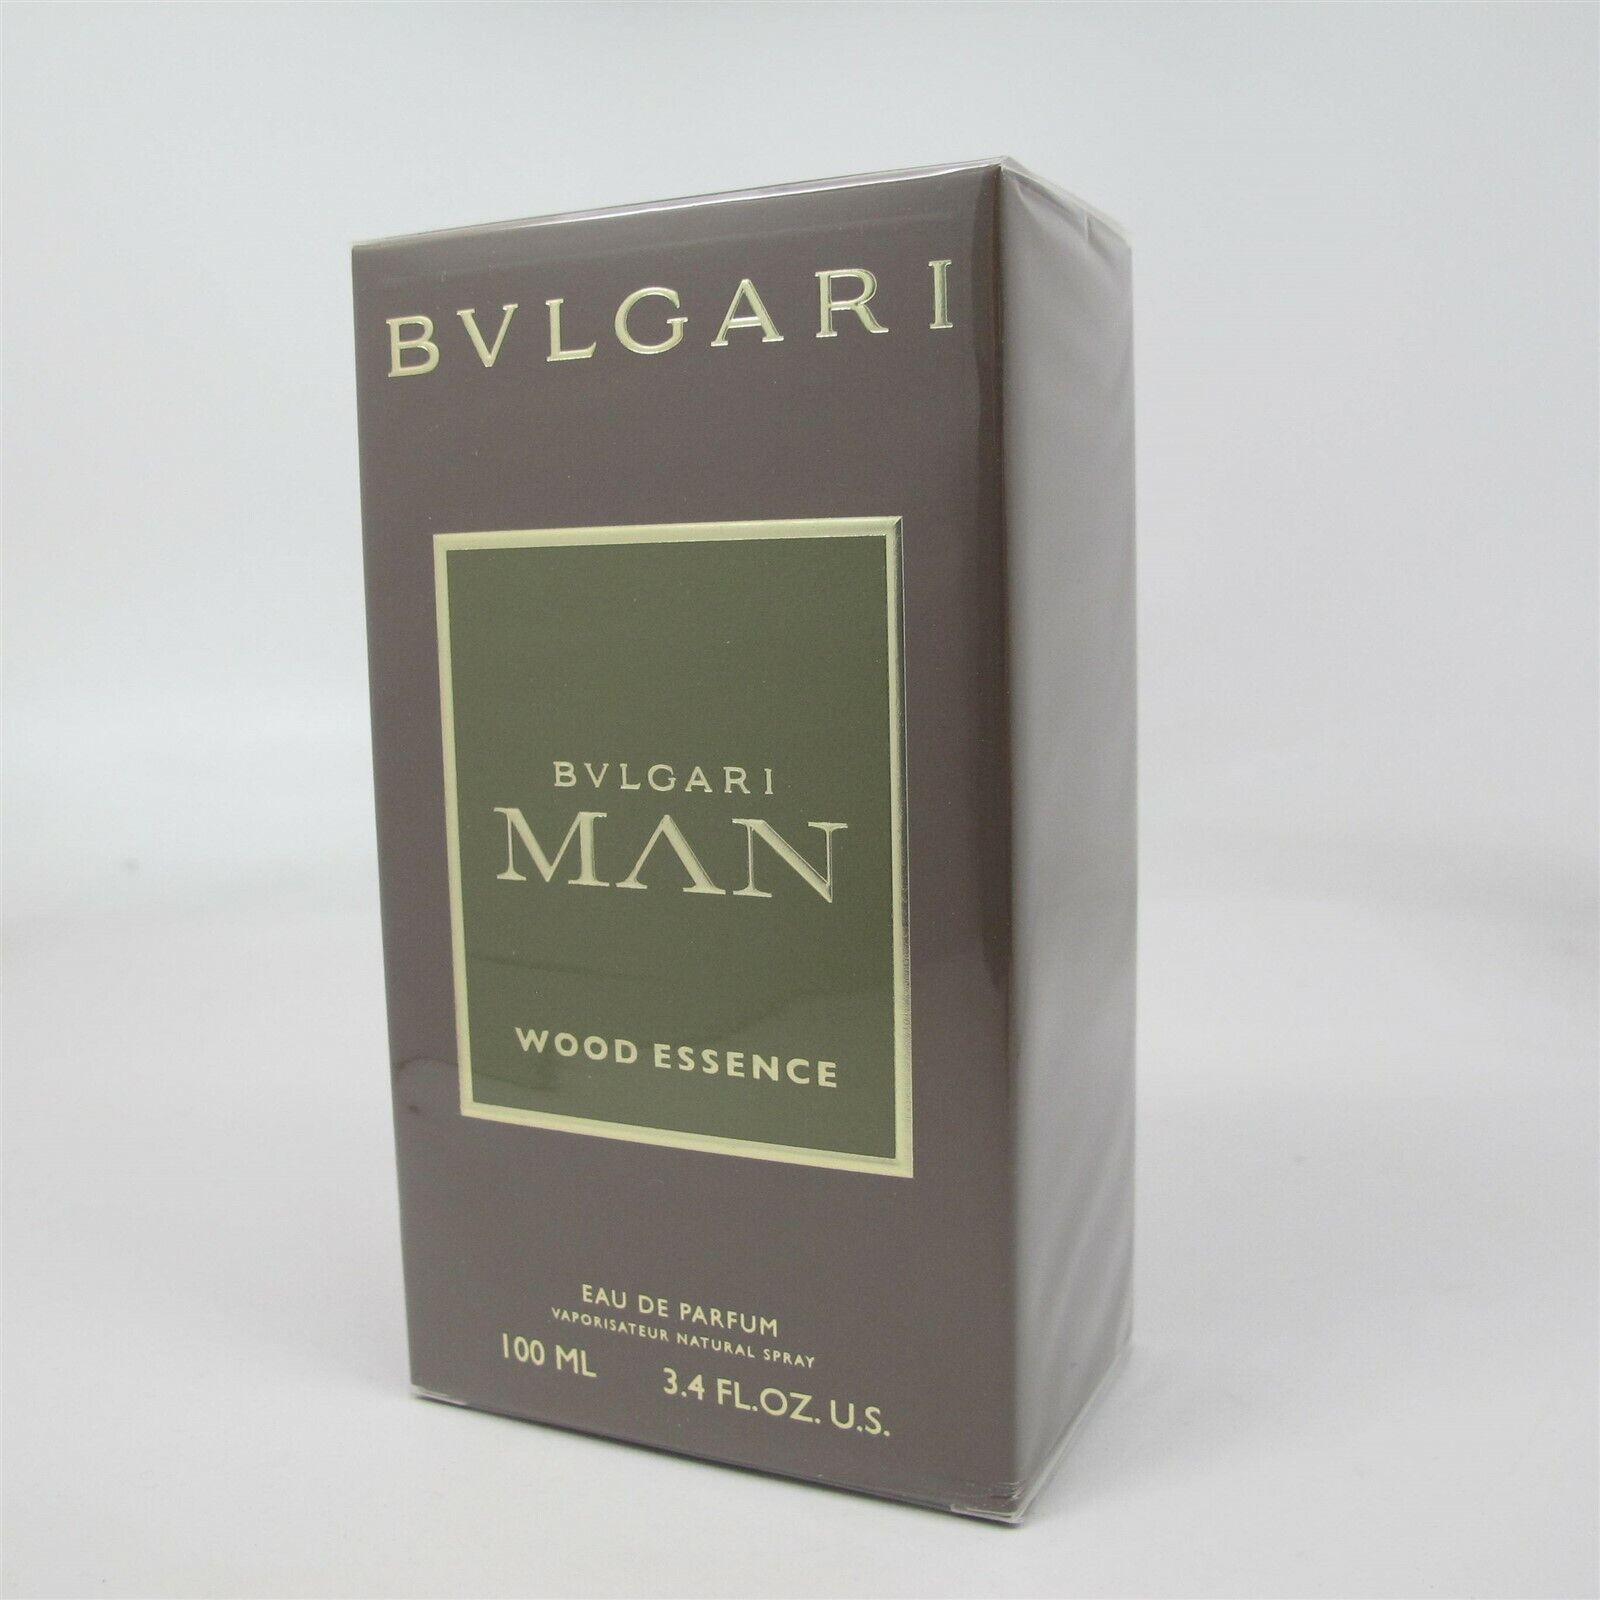 BVLGARI MAN WOOD ESSENCE by Bvlgari 100 ml/ 3.4 oz Eau de Parfum Spray NIB - $98.99